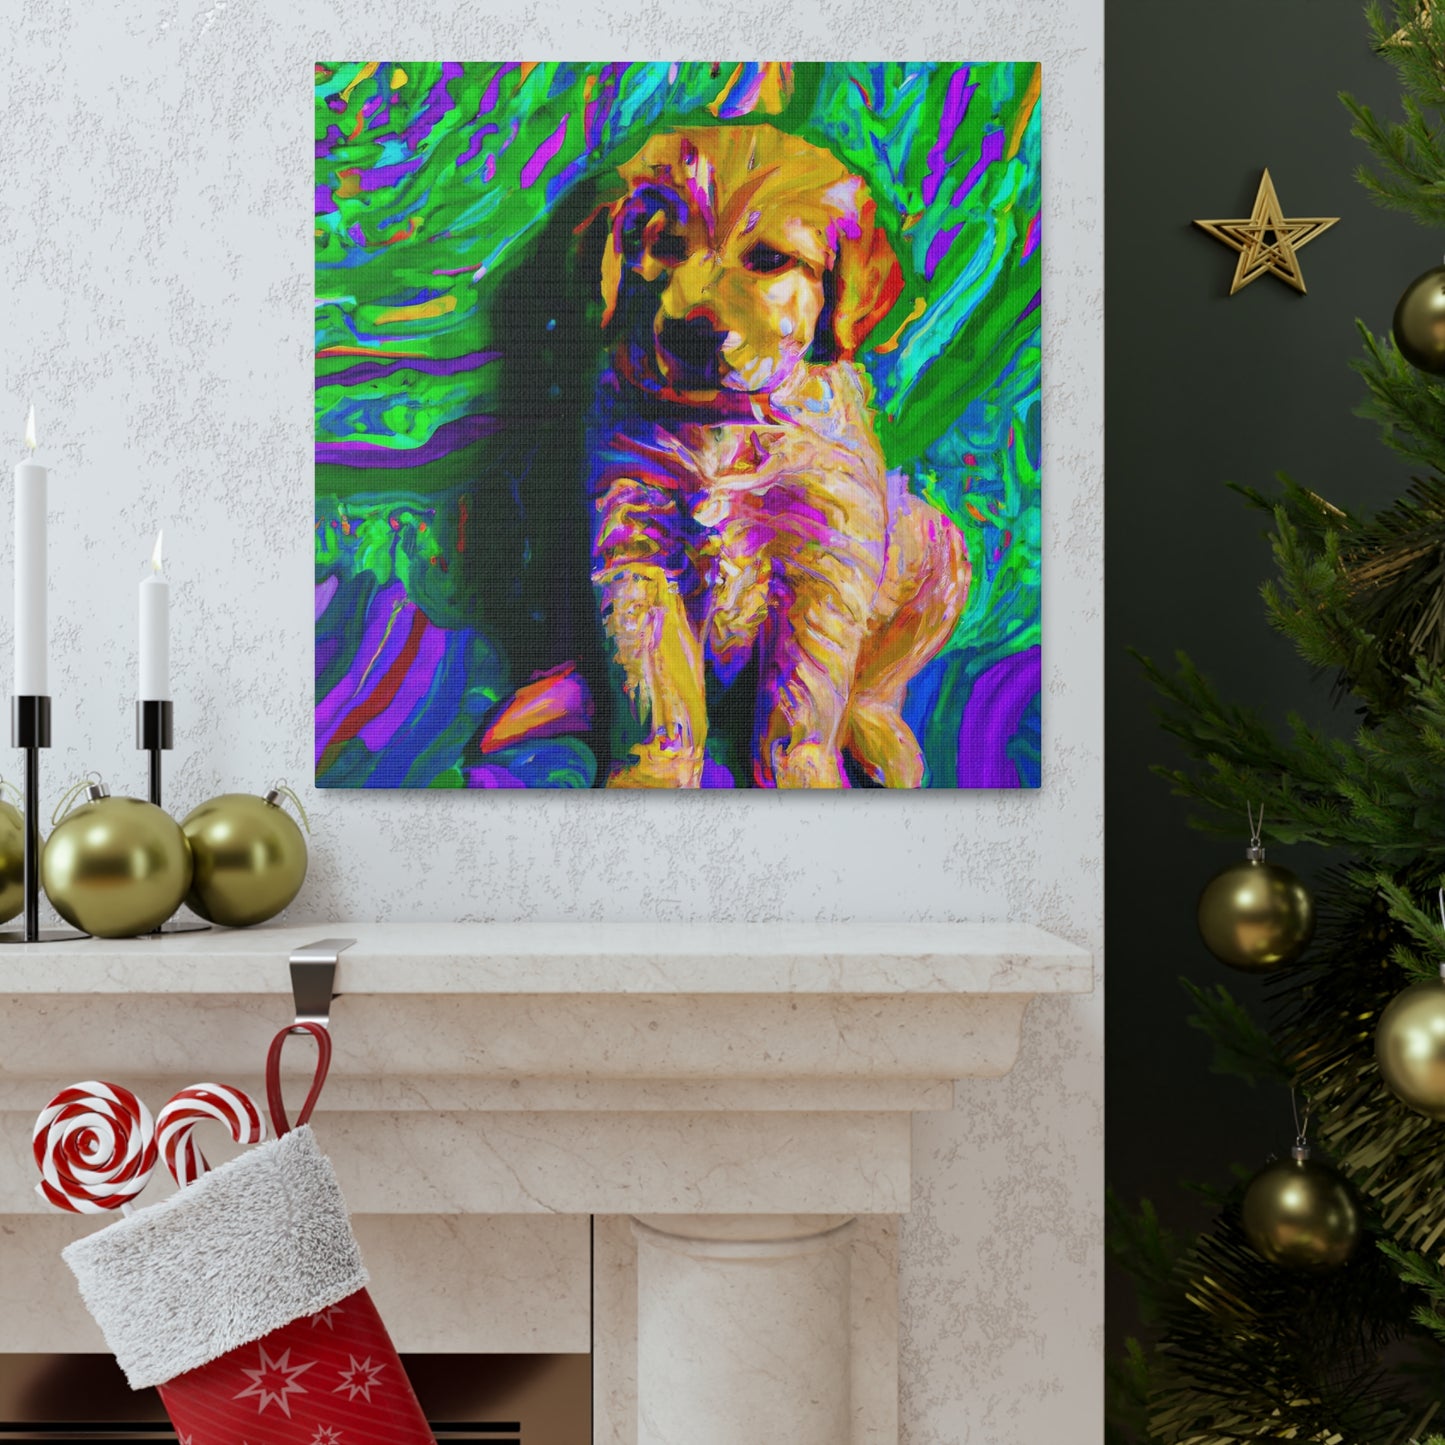 Kingston Remei de Becque - Golden Retriever Puppy - Canvas